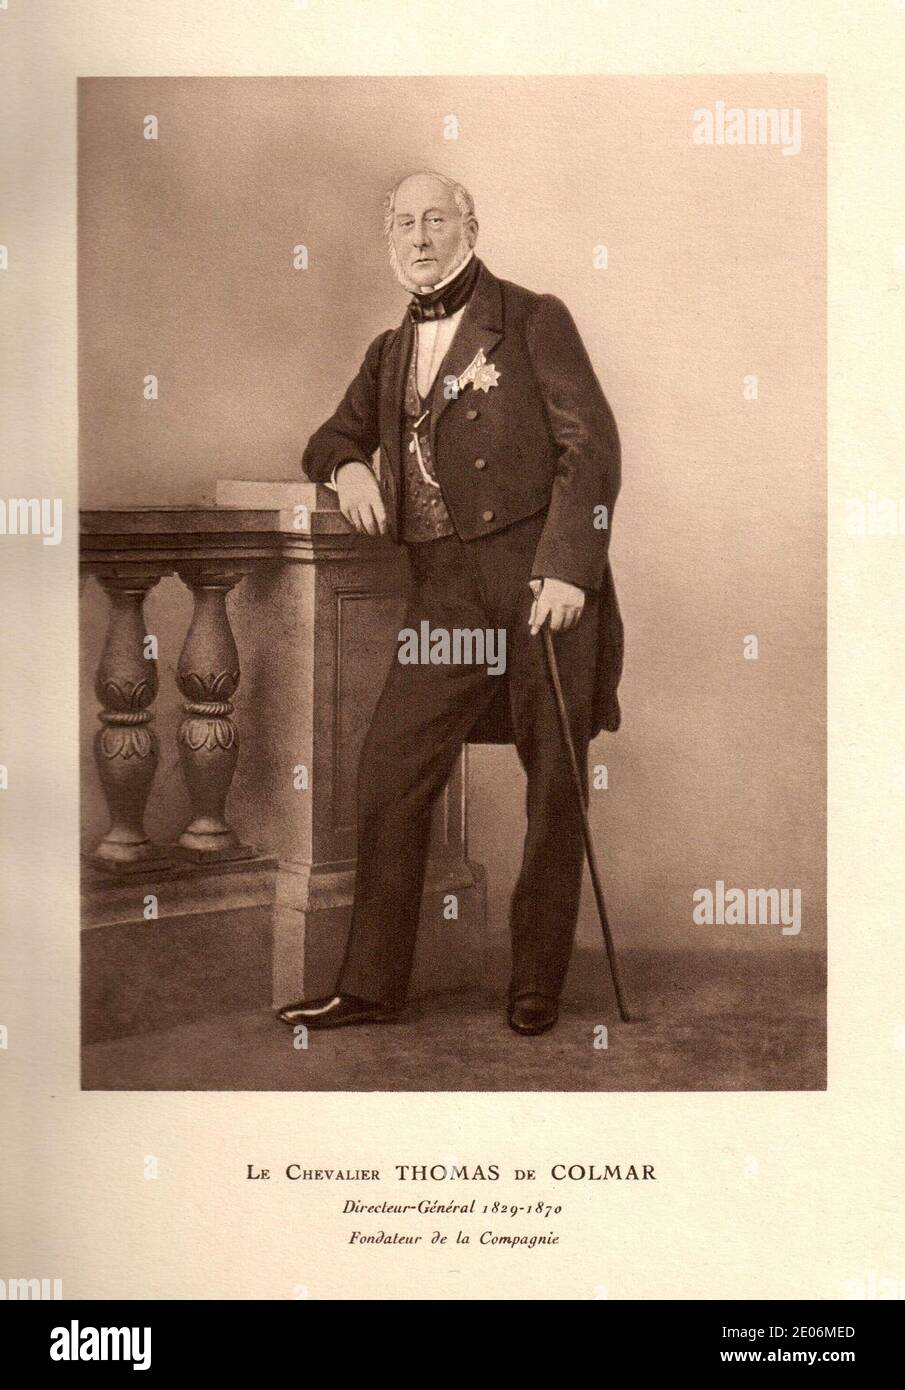 Le Chevalier Thomas de Colmar. Stock Photo